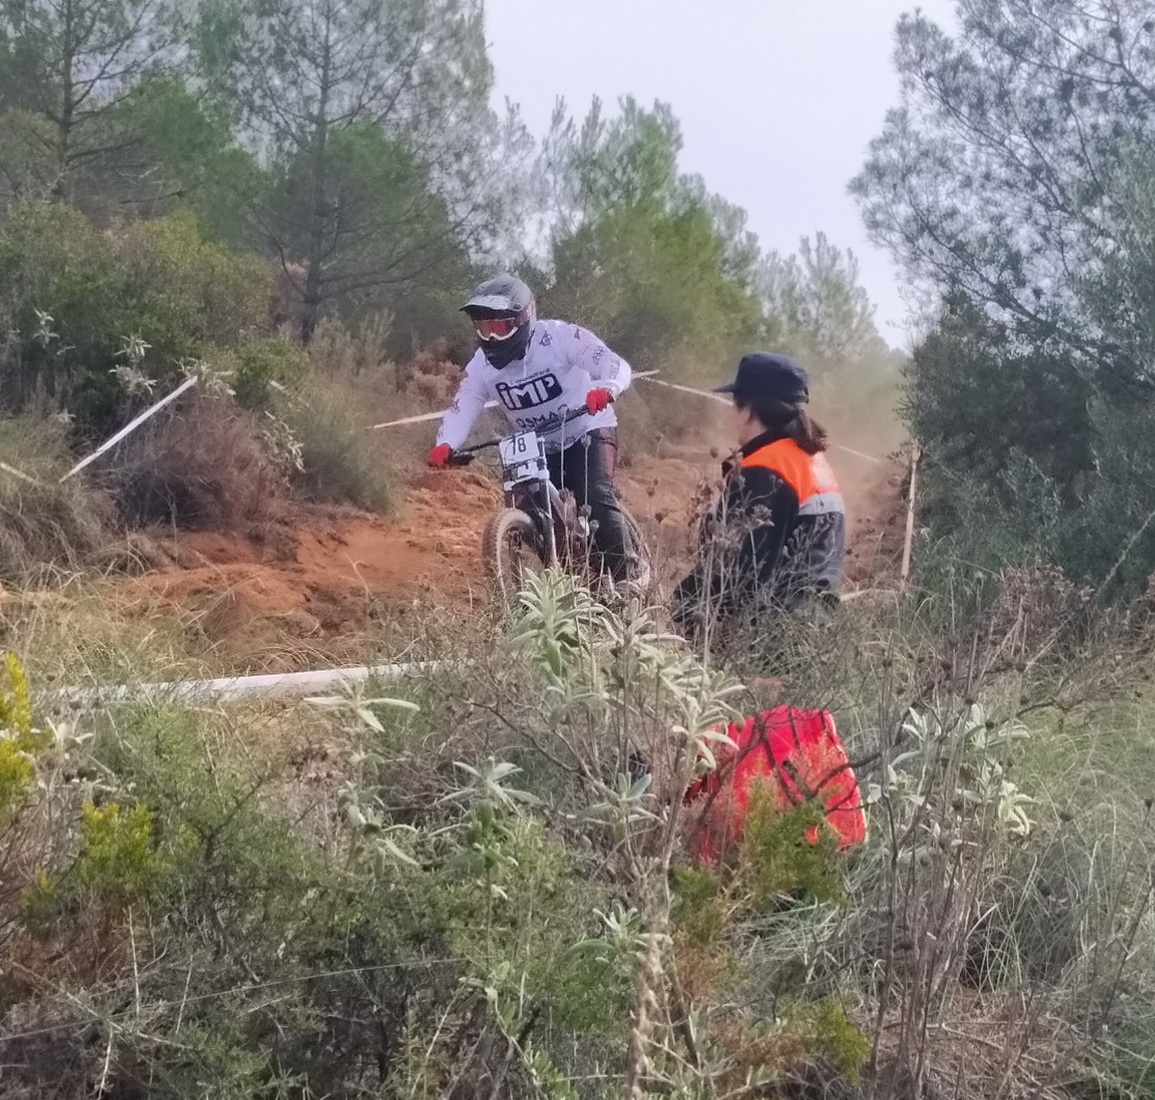 Proteccin Civil de Almucar participado en el desarrollo de la prueba ciclista Descenso BTT celebrada en Otvar  